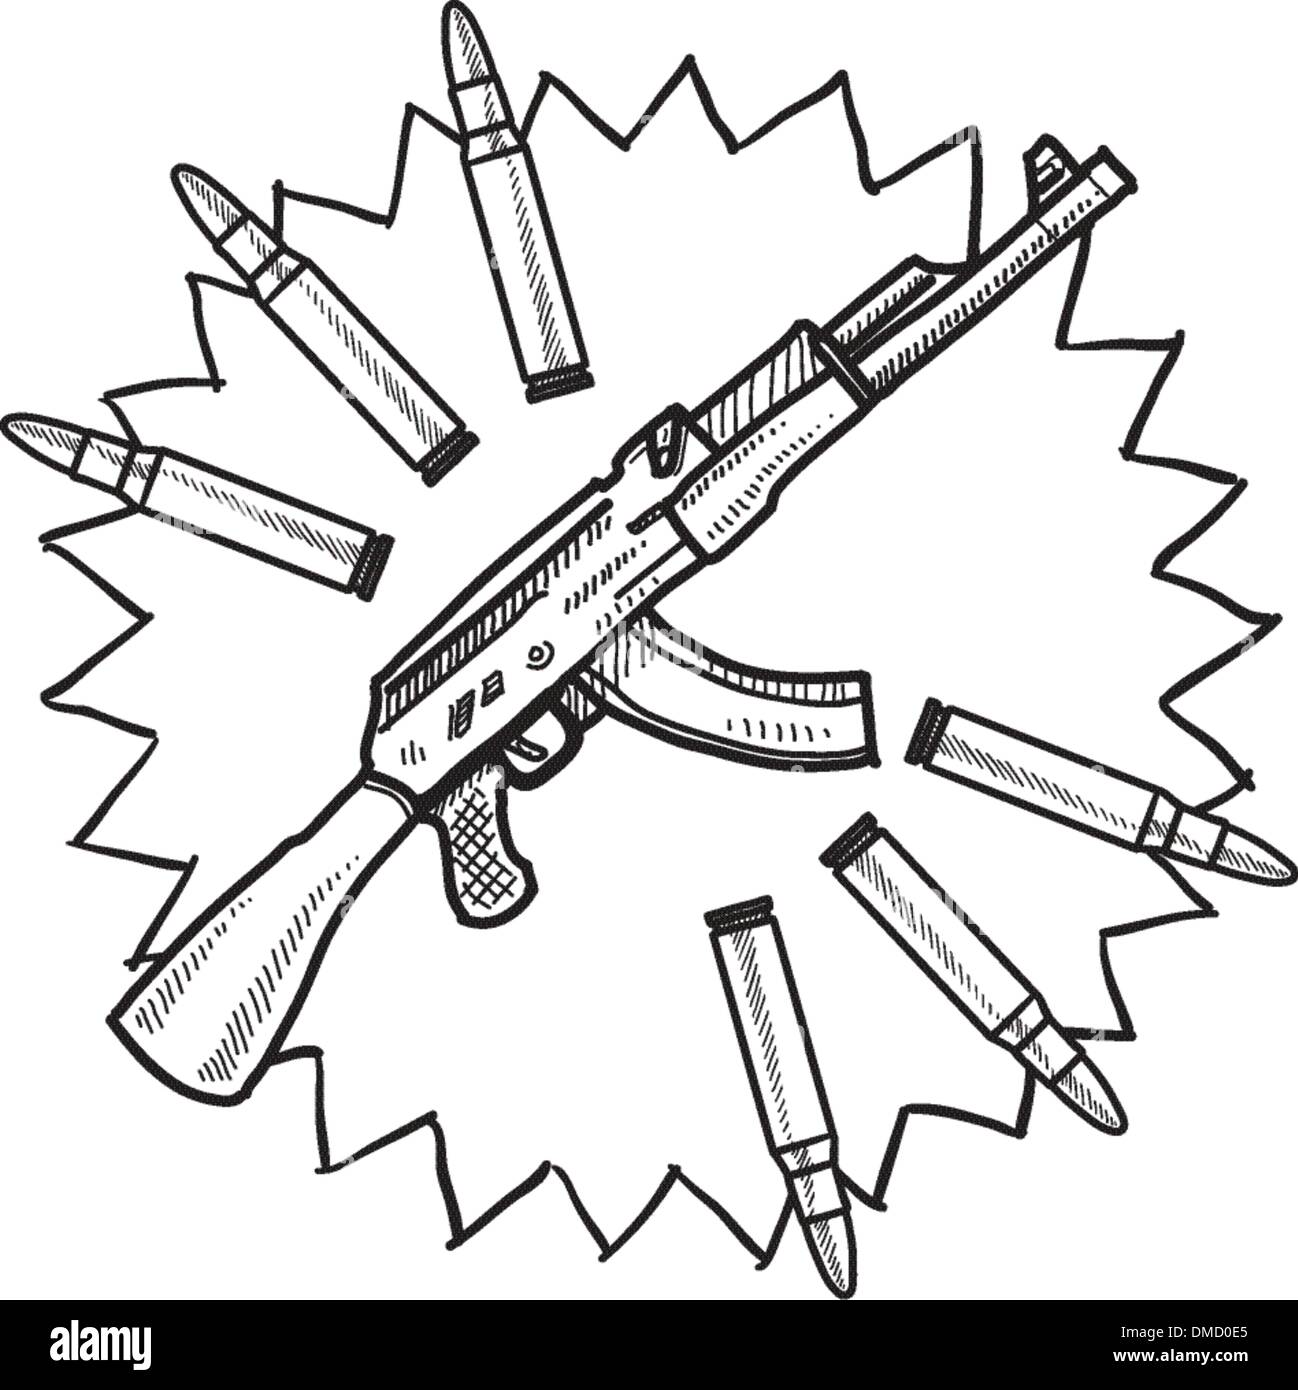 Croquis d'un fusil d'assaut Illustration de Vecteur